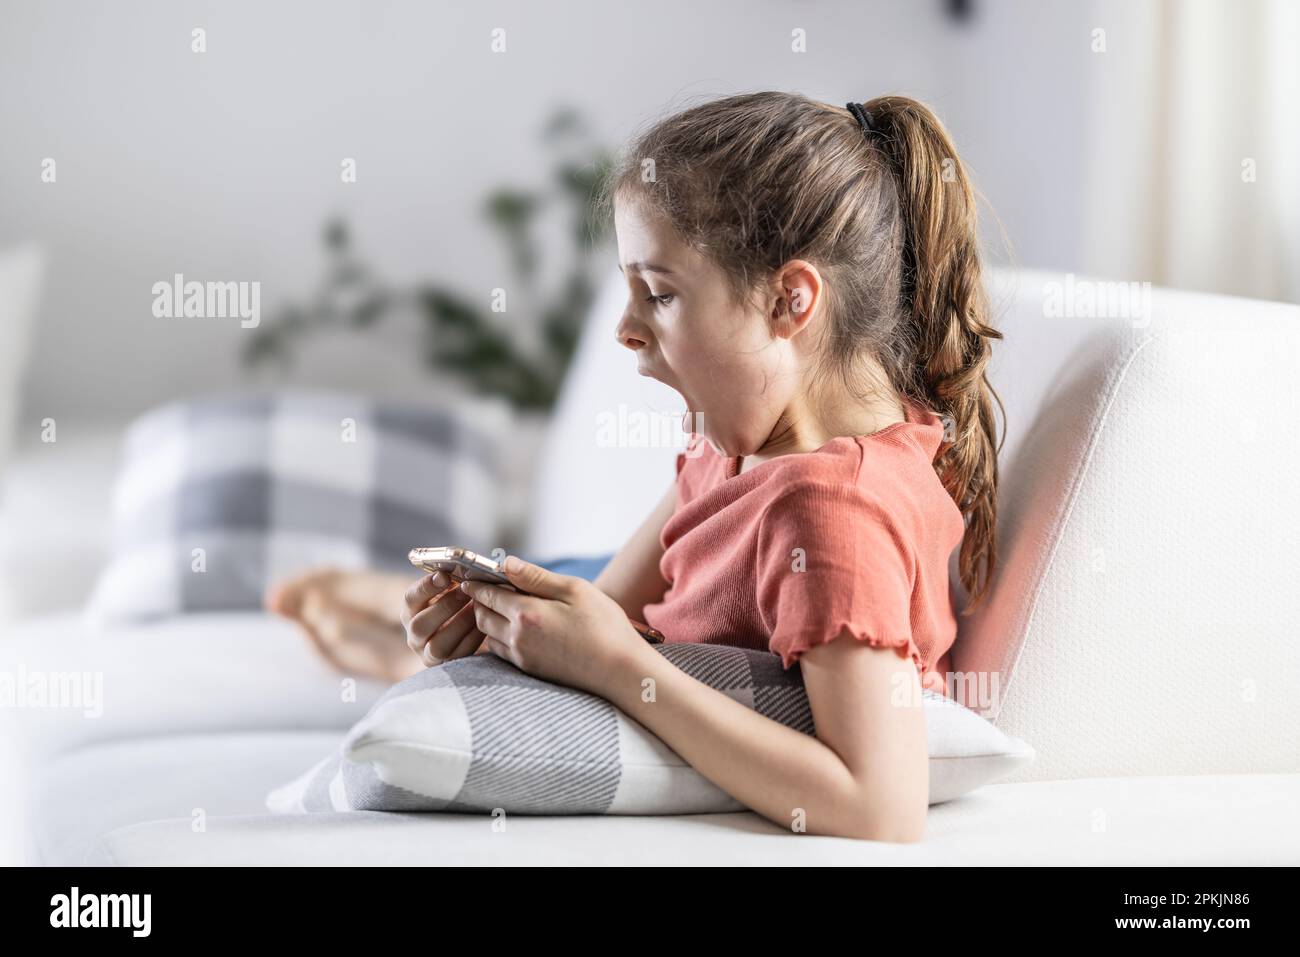 La ragazza che guarda nel suo telefono si sente stanca o annoiata mentre si siede a casa su un divano. Foto Stock